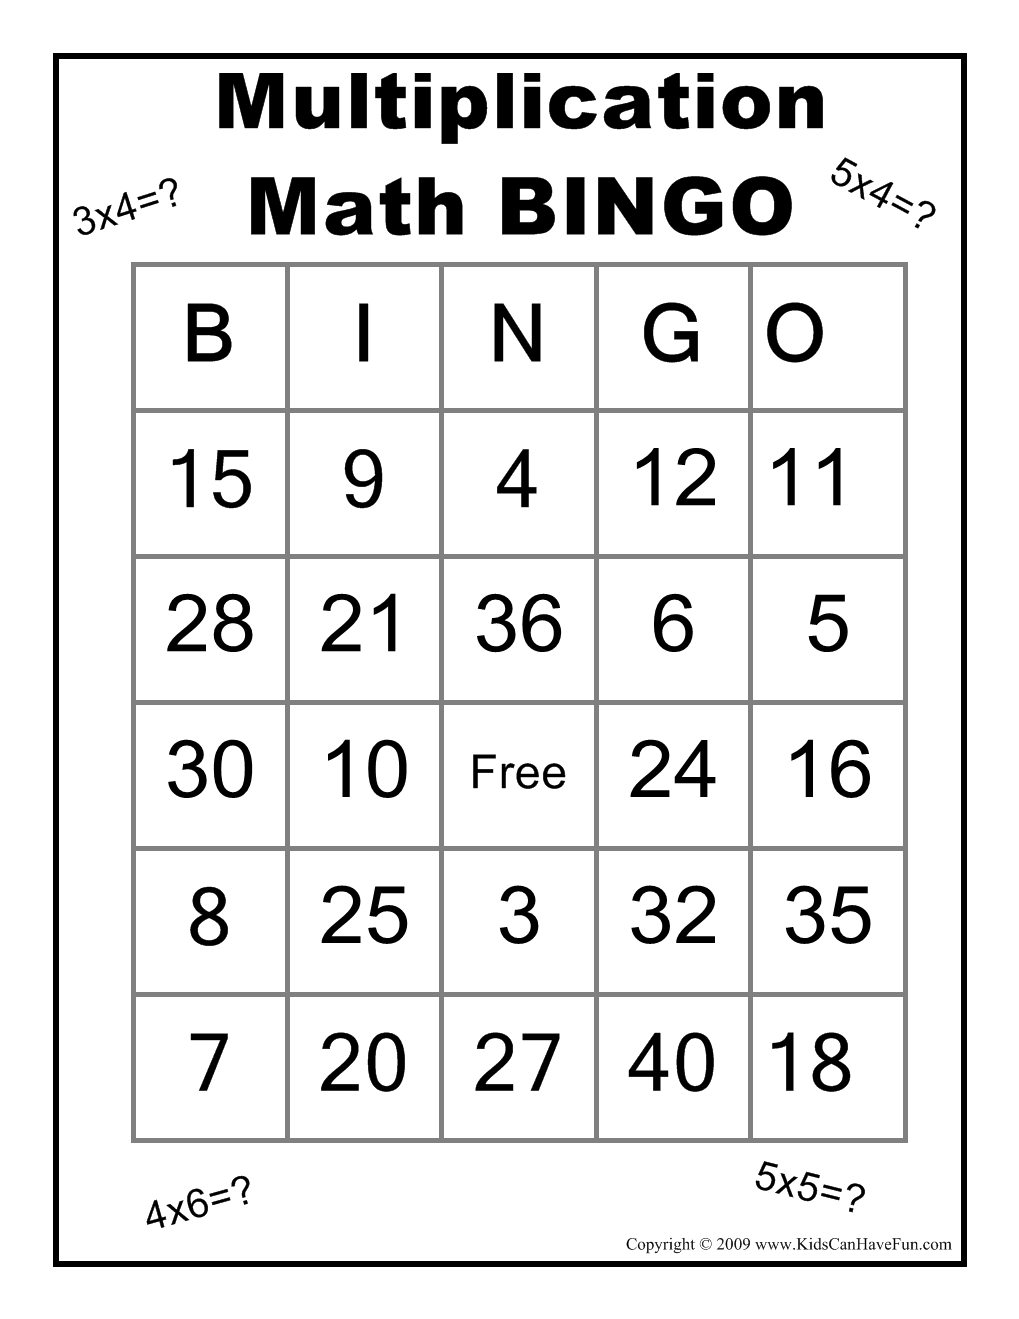 math-bingo-printable-pdf-printable-world-holiday